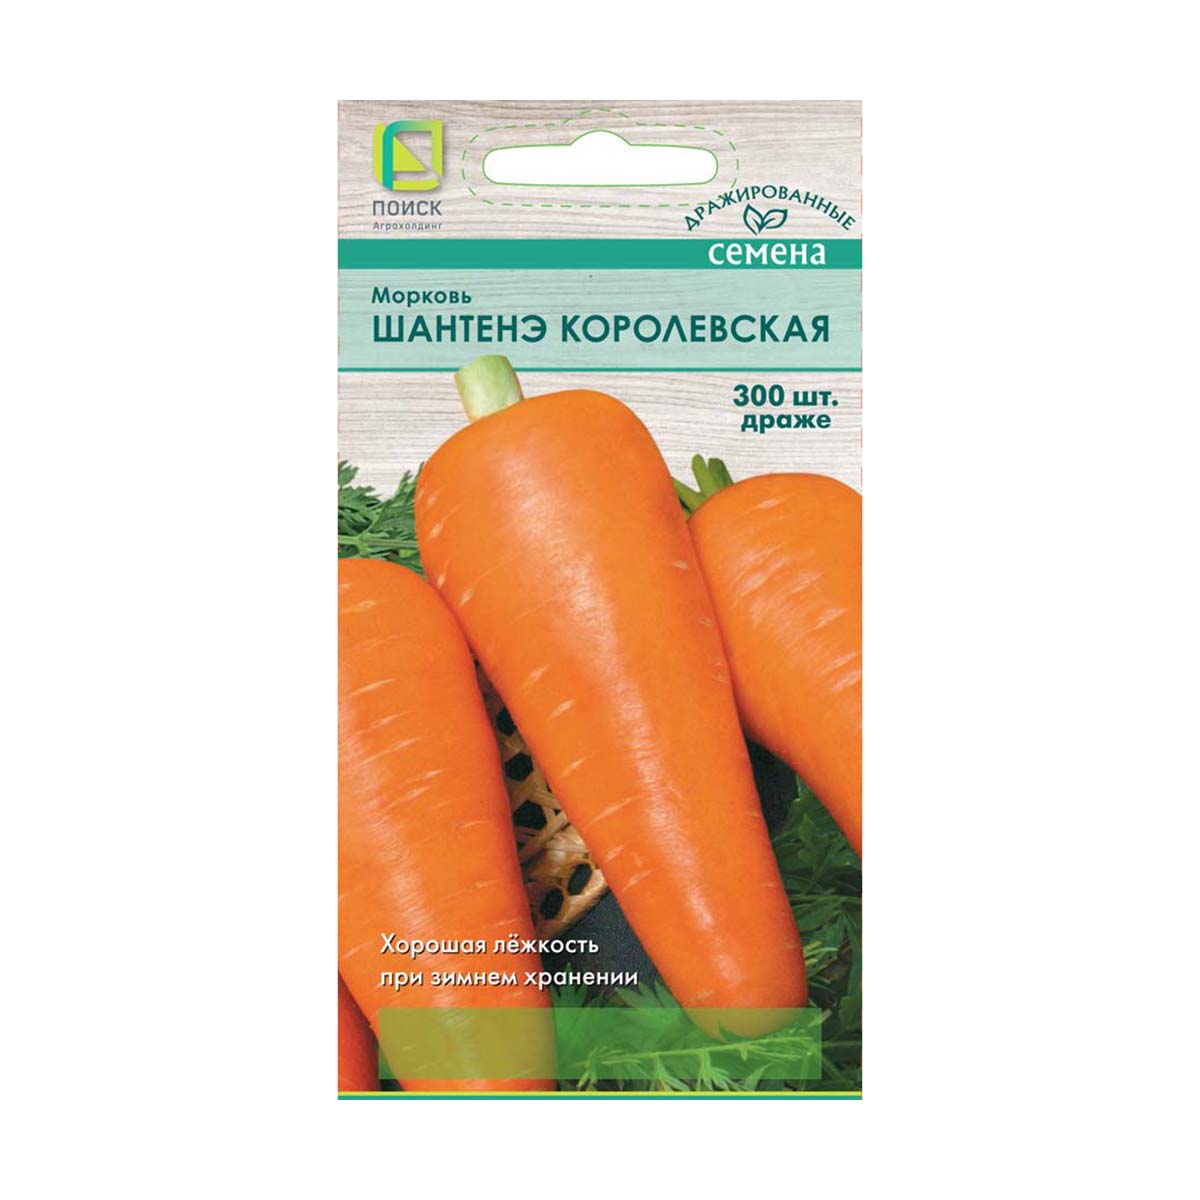 Семена дражированные морковь" шантенэ королевская" (а) 300 шт. (10/100) "поиск"